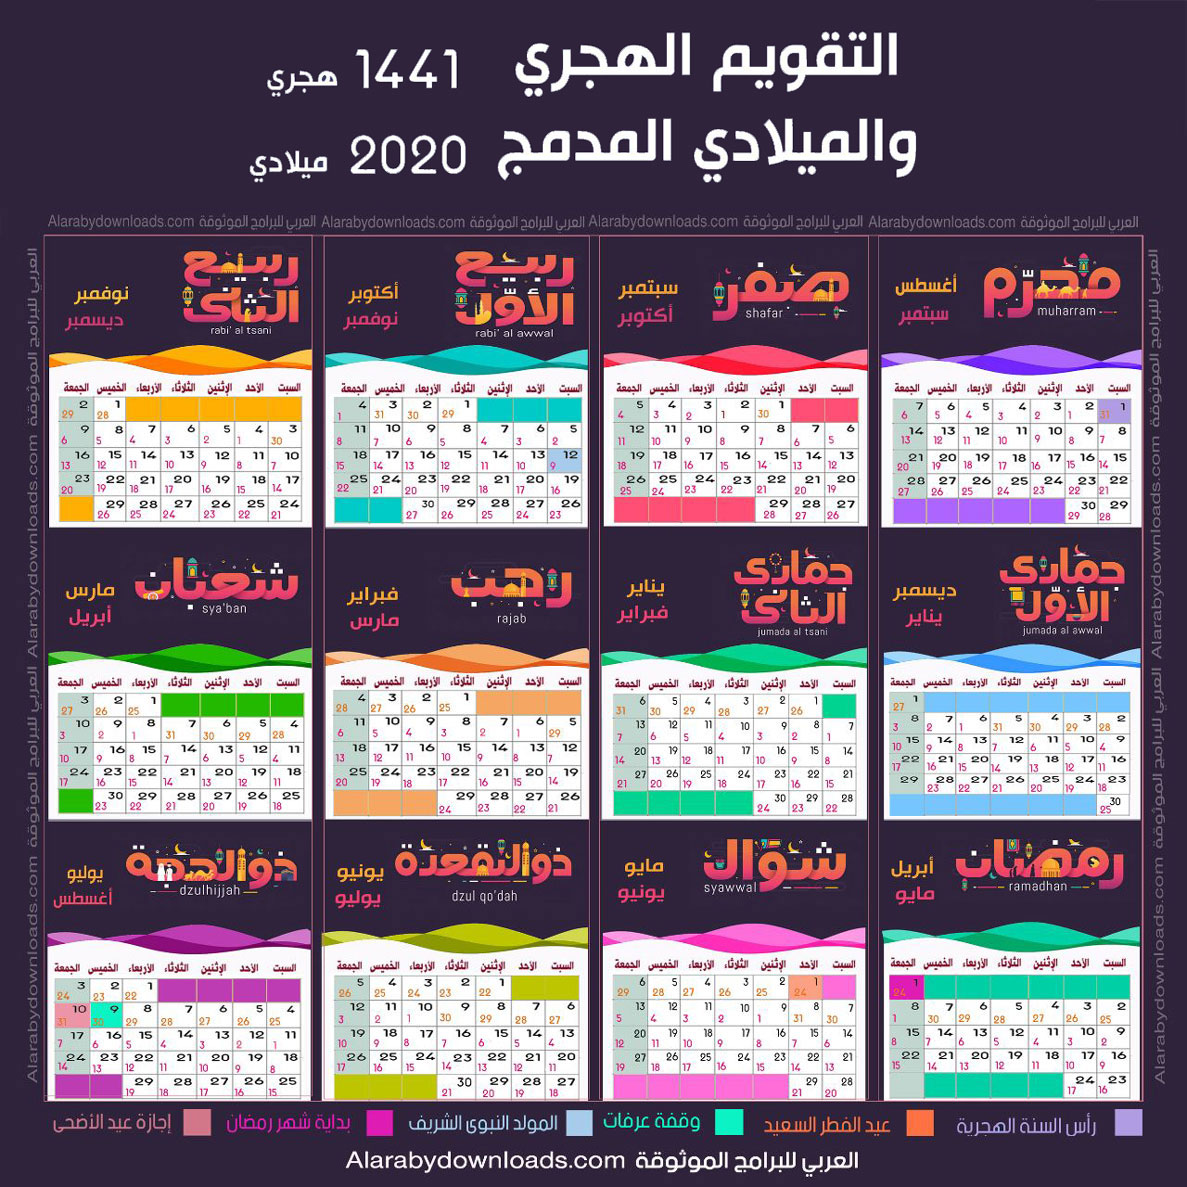 تحميل التقويم الميلادي 2020 صور Pdf تاريخ اليوم بالميلادي تقويم الاشهر الميلادية Calendar 2020 Calendar Study Skills